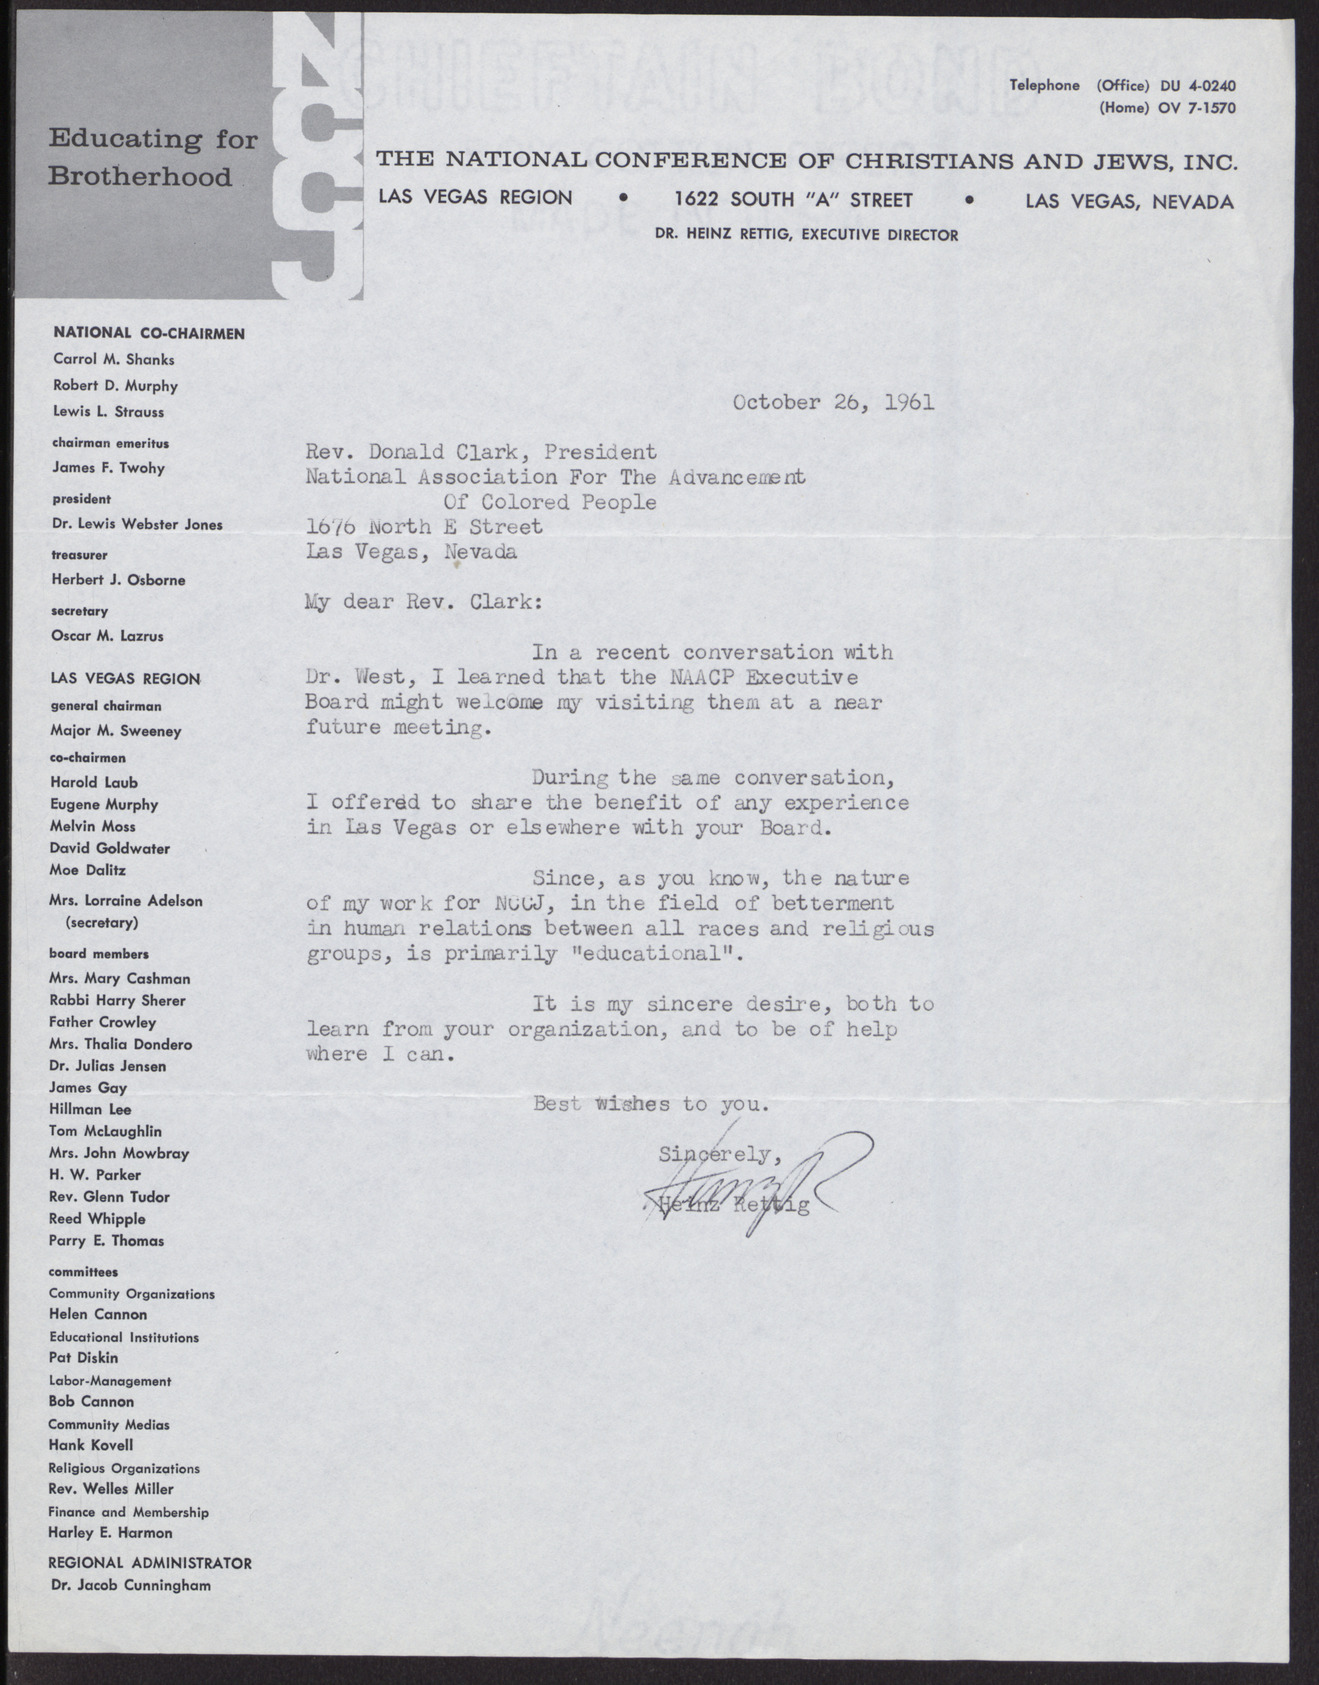 Letter to Rev. Donald Clark from Heinz Rettig, October 26, 1961